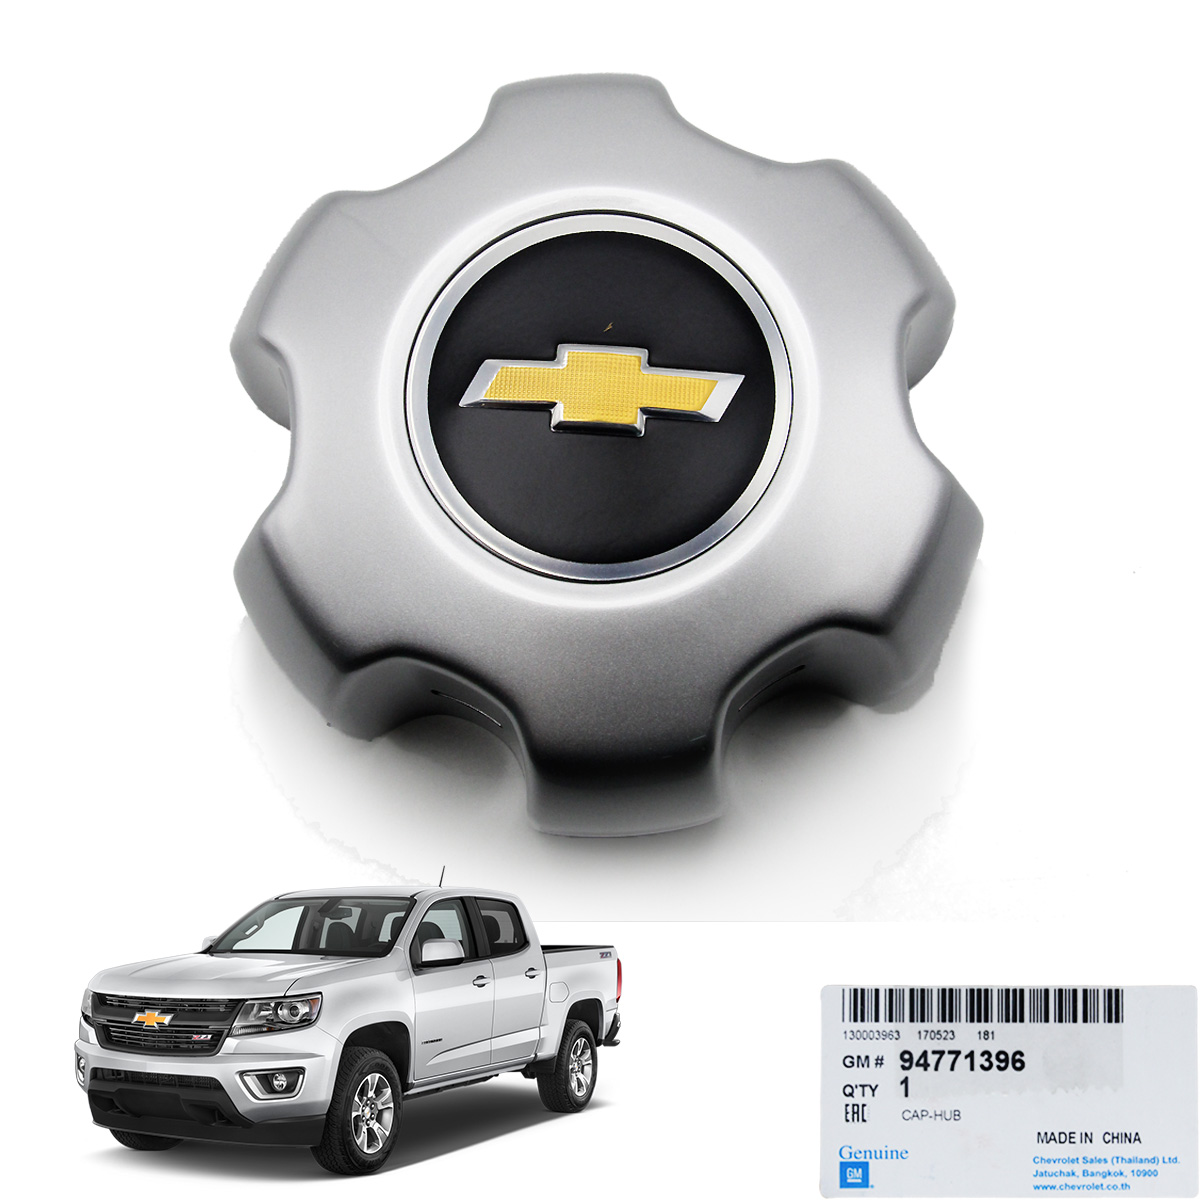 ฝาดุมล้อ รุ่นขอบยาง 16 นิ้ว  ของแท้ ฝาครอบดุมล้อ ดุมล้อ จำนวน 1ชิ้น สีบอร์น Chevrolet Colorado เชฟโลเลต โคโรลาโด้ โคโลราโด ปี 2012 2013 2014 2015 2016 2017 2 ประตู 4 ประตู สินค้าราถูก คุณภาพดี Wheel Cap Genuine